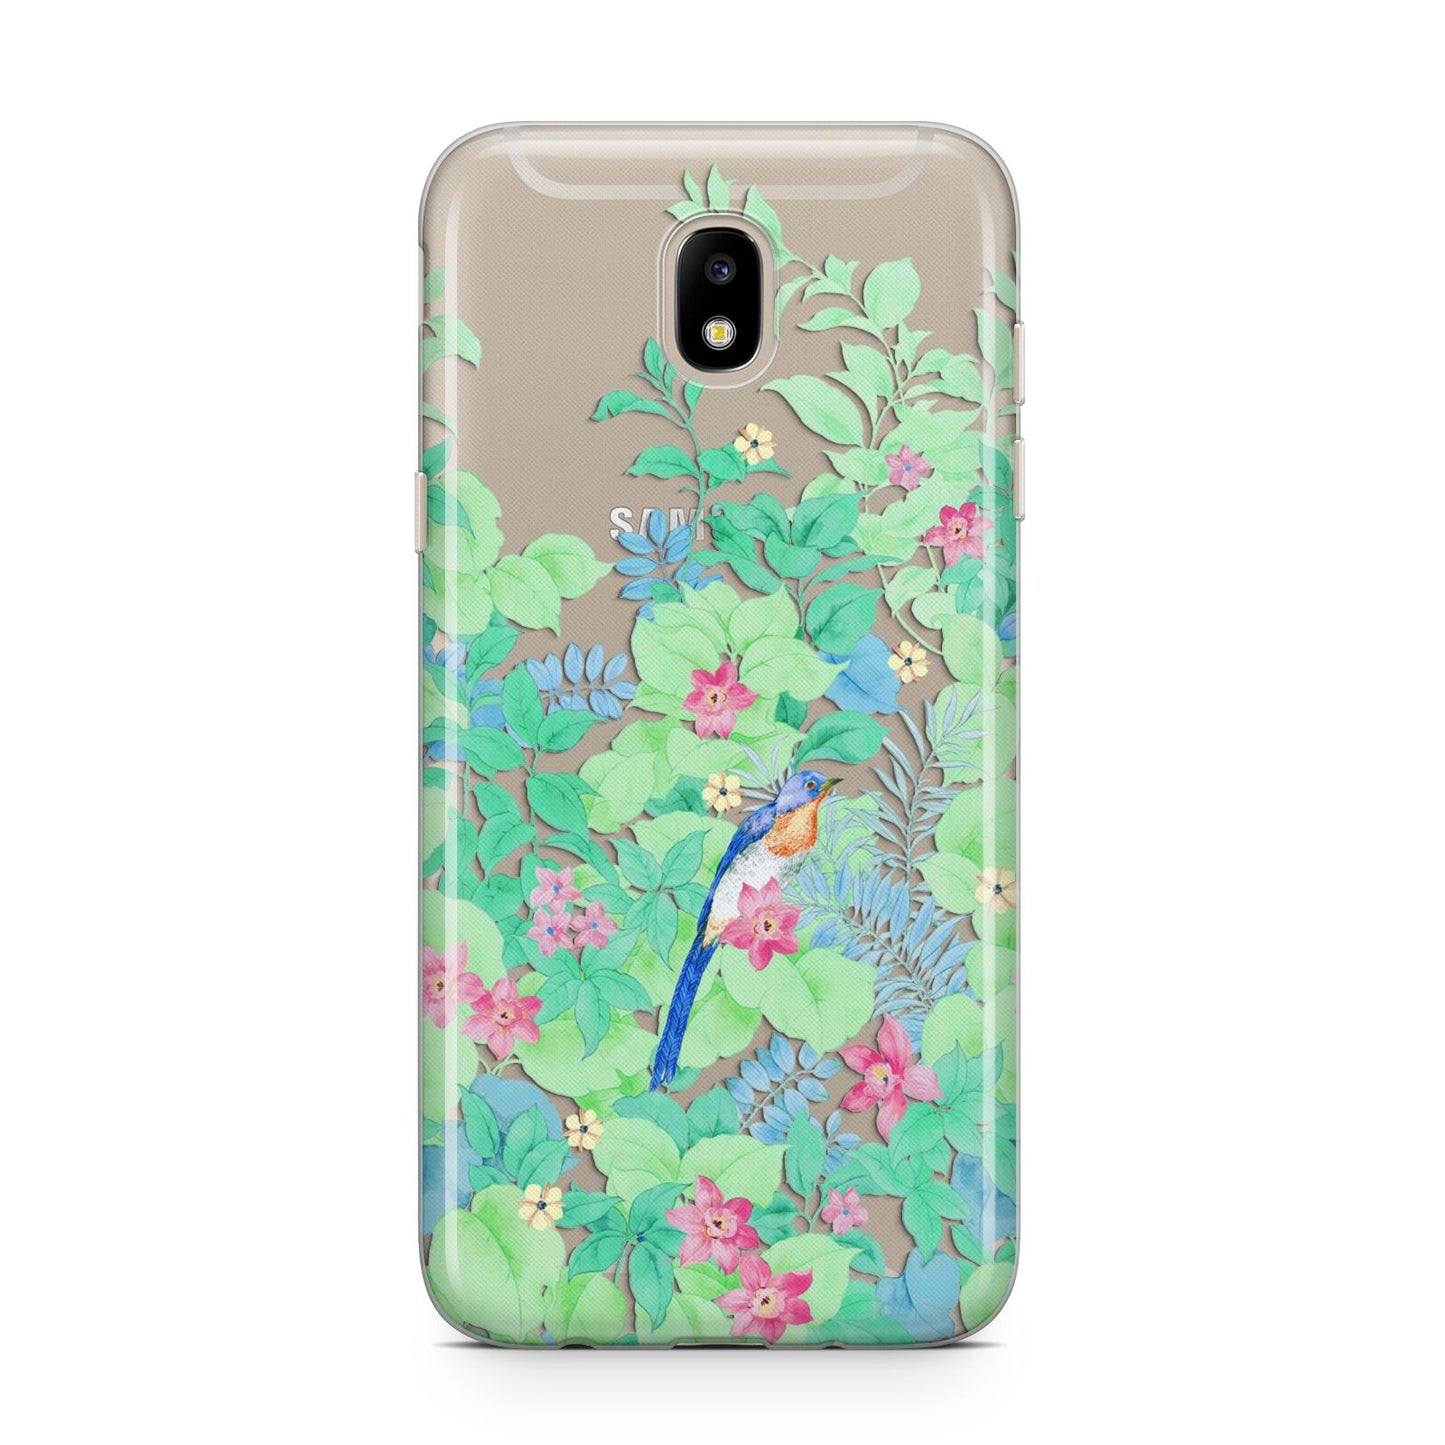 Watercolour Floral Samsung J5 2017 Case